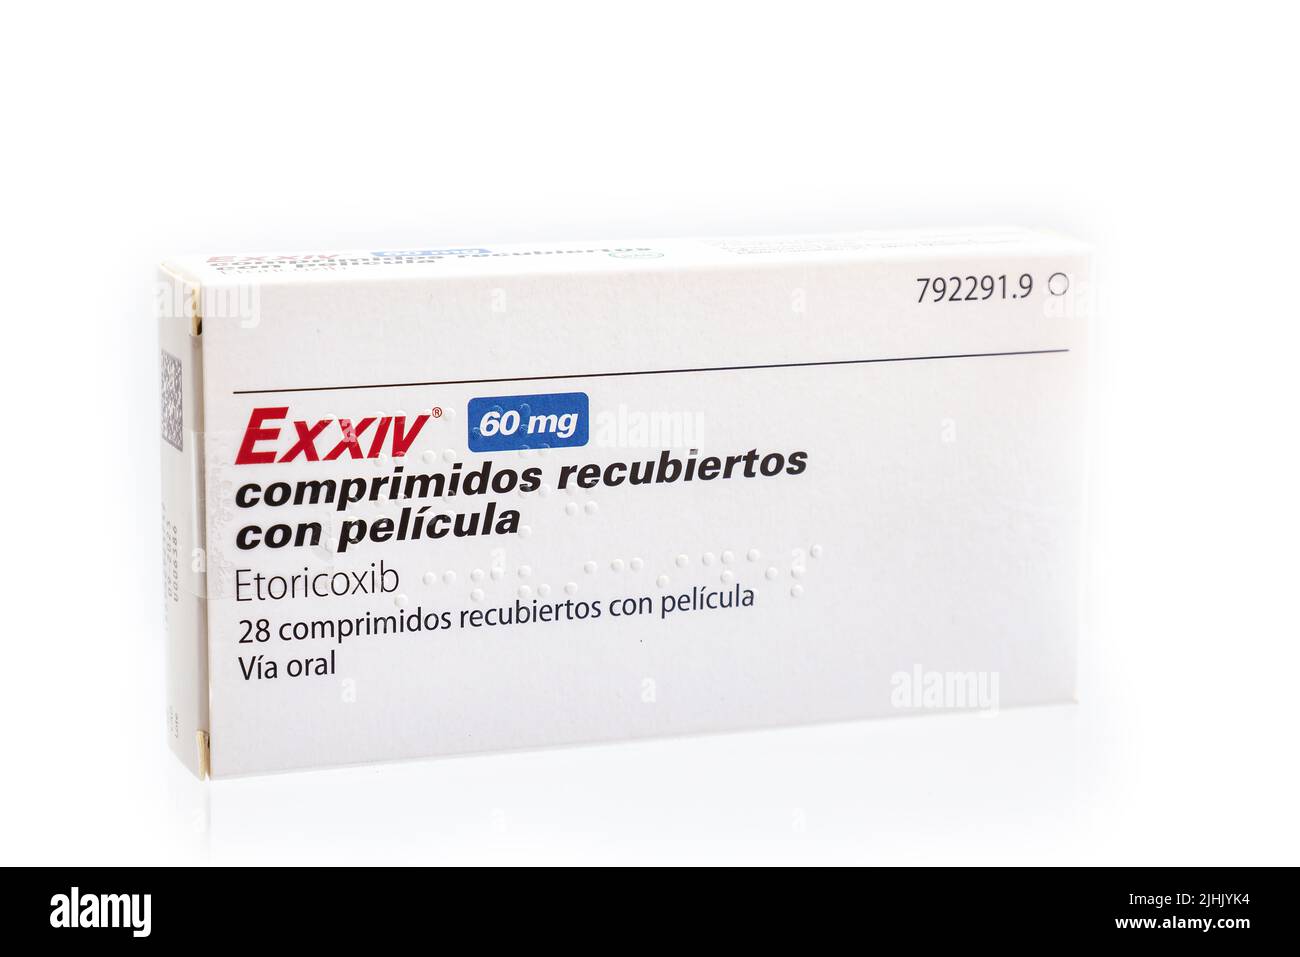 Huelva, España - 19 de julio de 2022: Una caja española de Etoricoxib, marca EXXIV. Está indicado para la artritis reumatoide, la artritis psoriásica y la osteoartritis Foto de stock